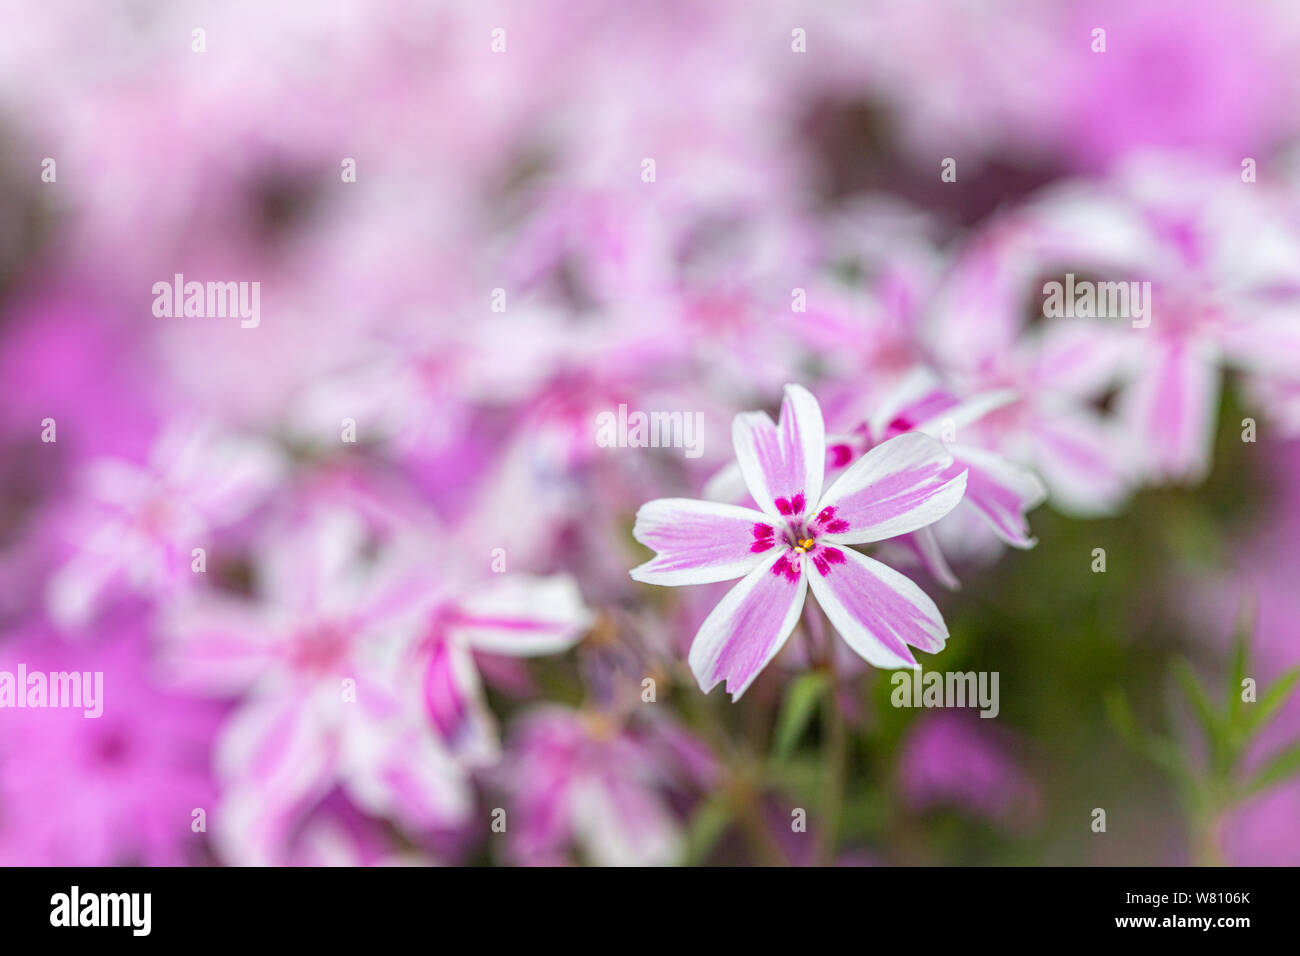 Makro Fotografie: ein rosa Bett von Blumen mit einer einzigen Blume auf der forgroung Stockfoto